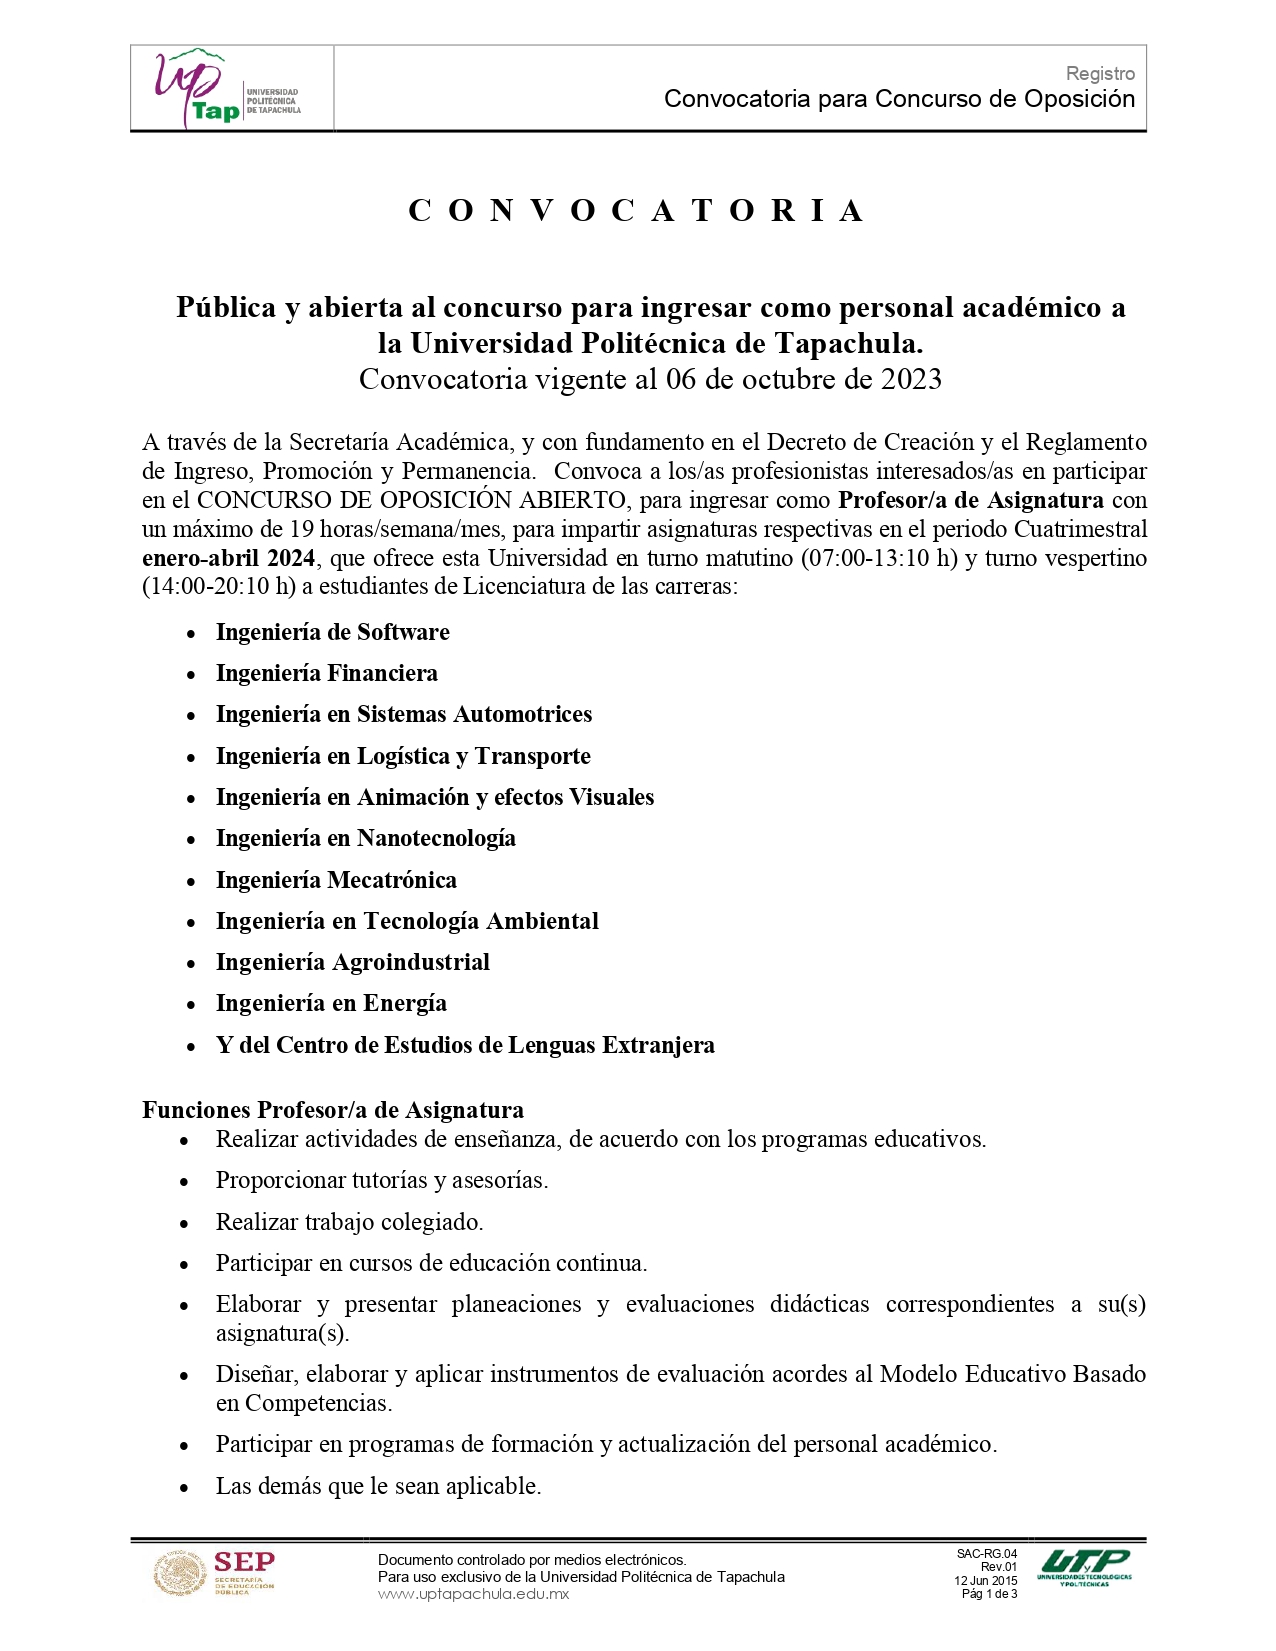 CONVOCATORIA PÚBLICA - CONCURSO DE OPOSICIÓN ABIERTO, para ingresar como personal académico.